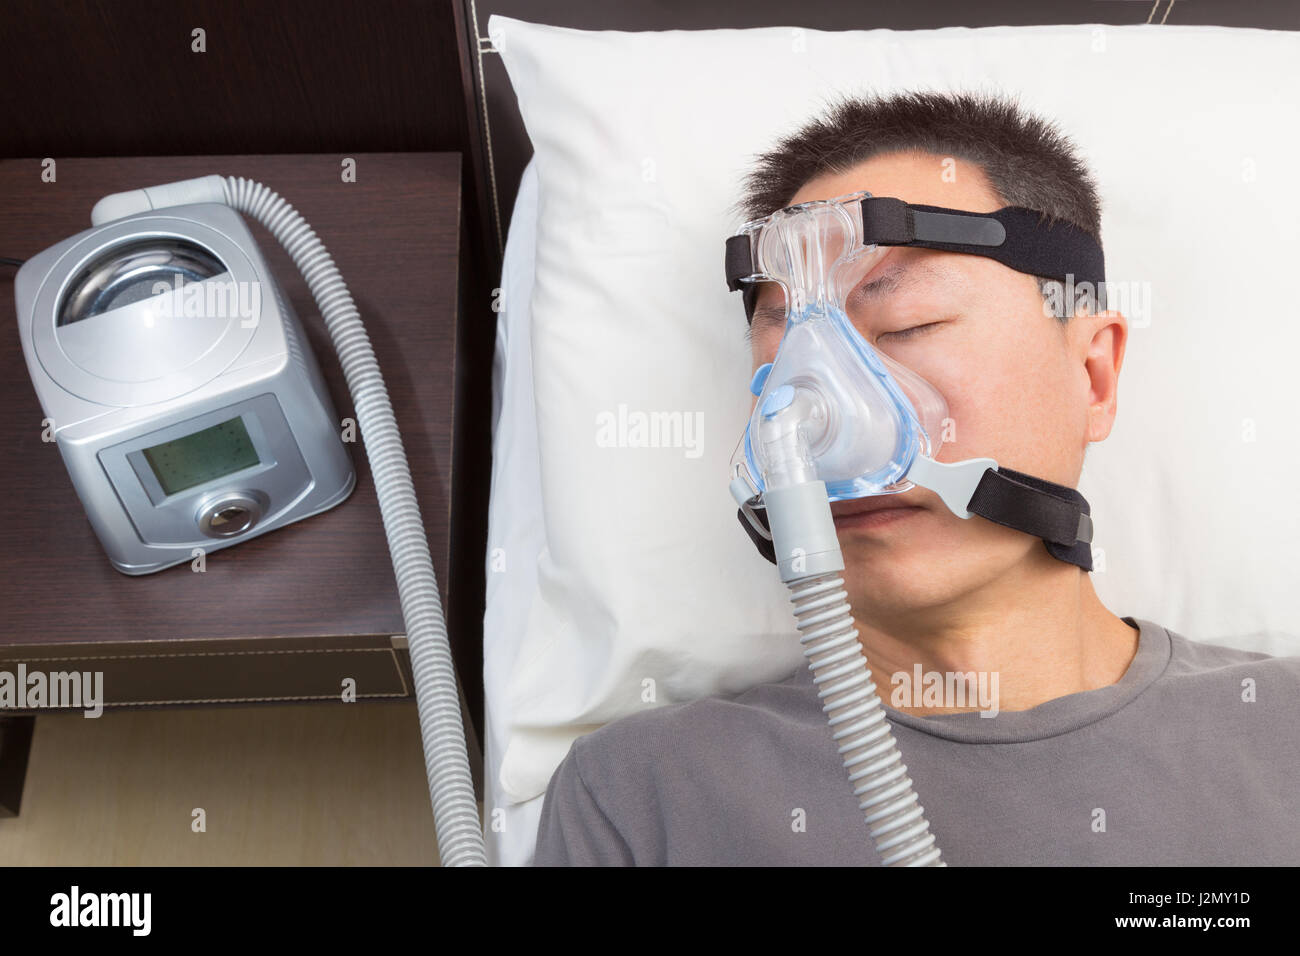 L'homme asiatique avec l'apnée du sommeil à l'aide d'appareil CPAP, le port  de masque harnais connexion au tube d'air, selective focus sur le masque et  le harnais de l'homme Photo Stock -